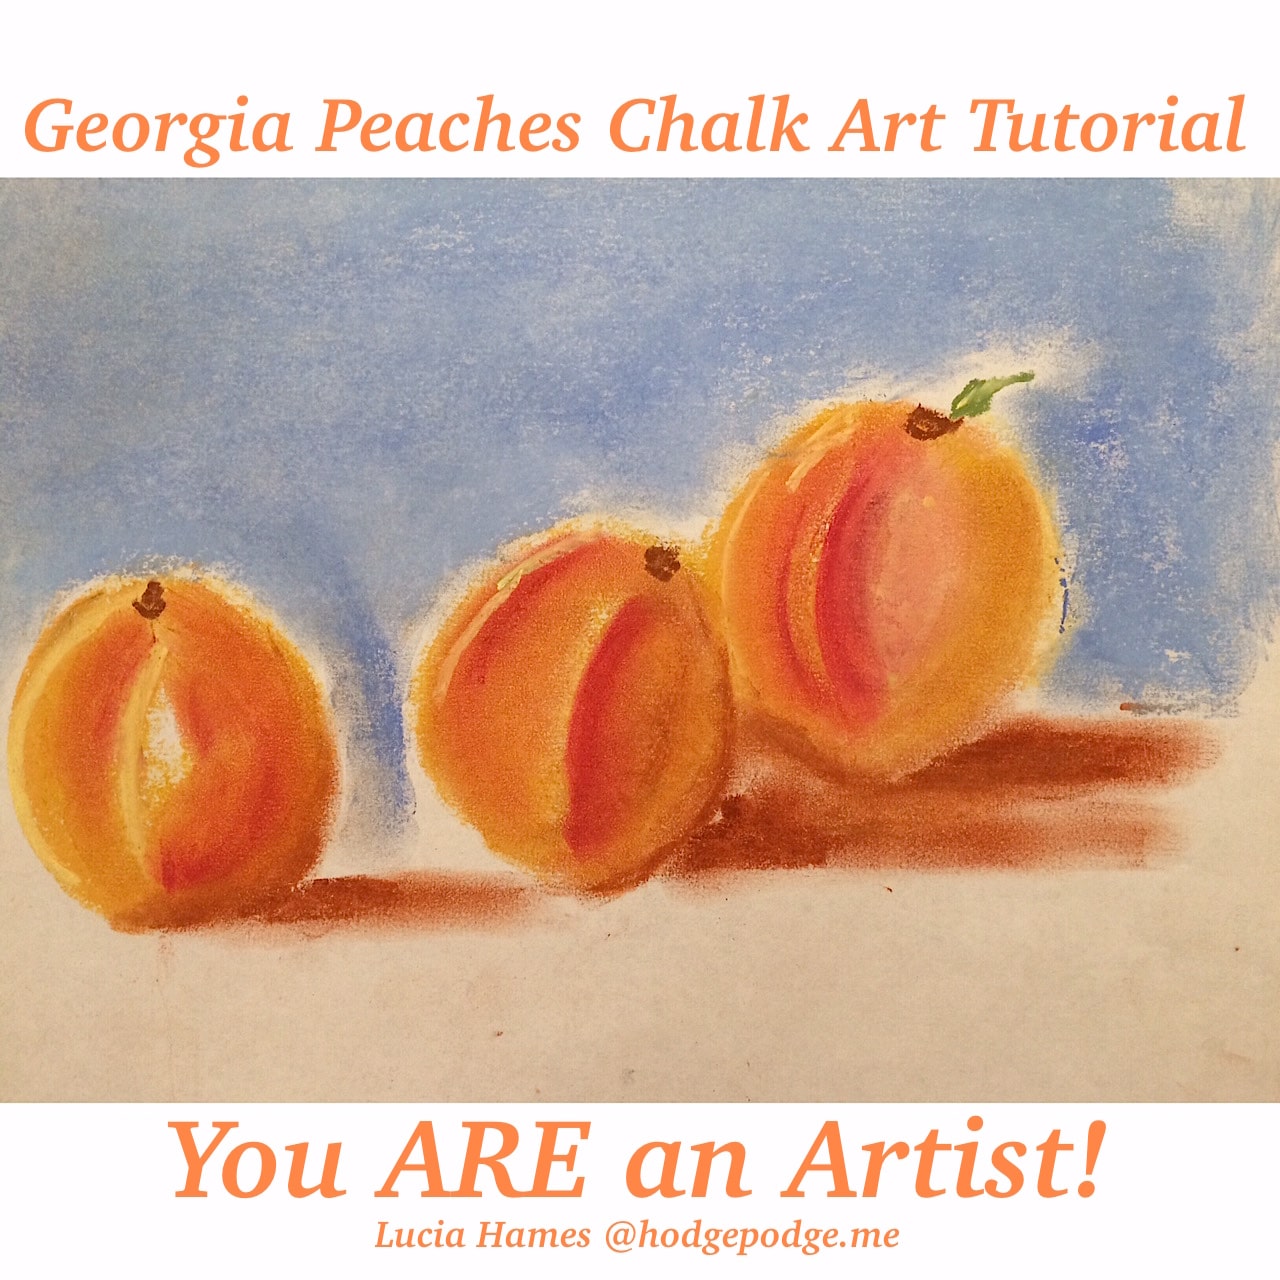 Georgia Peaches Chalk Art Tutorial